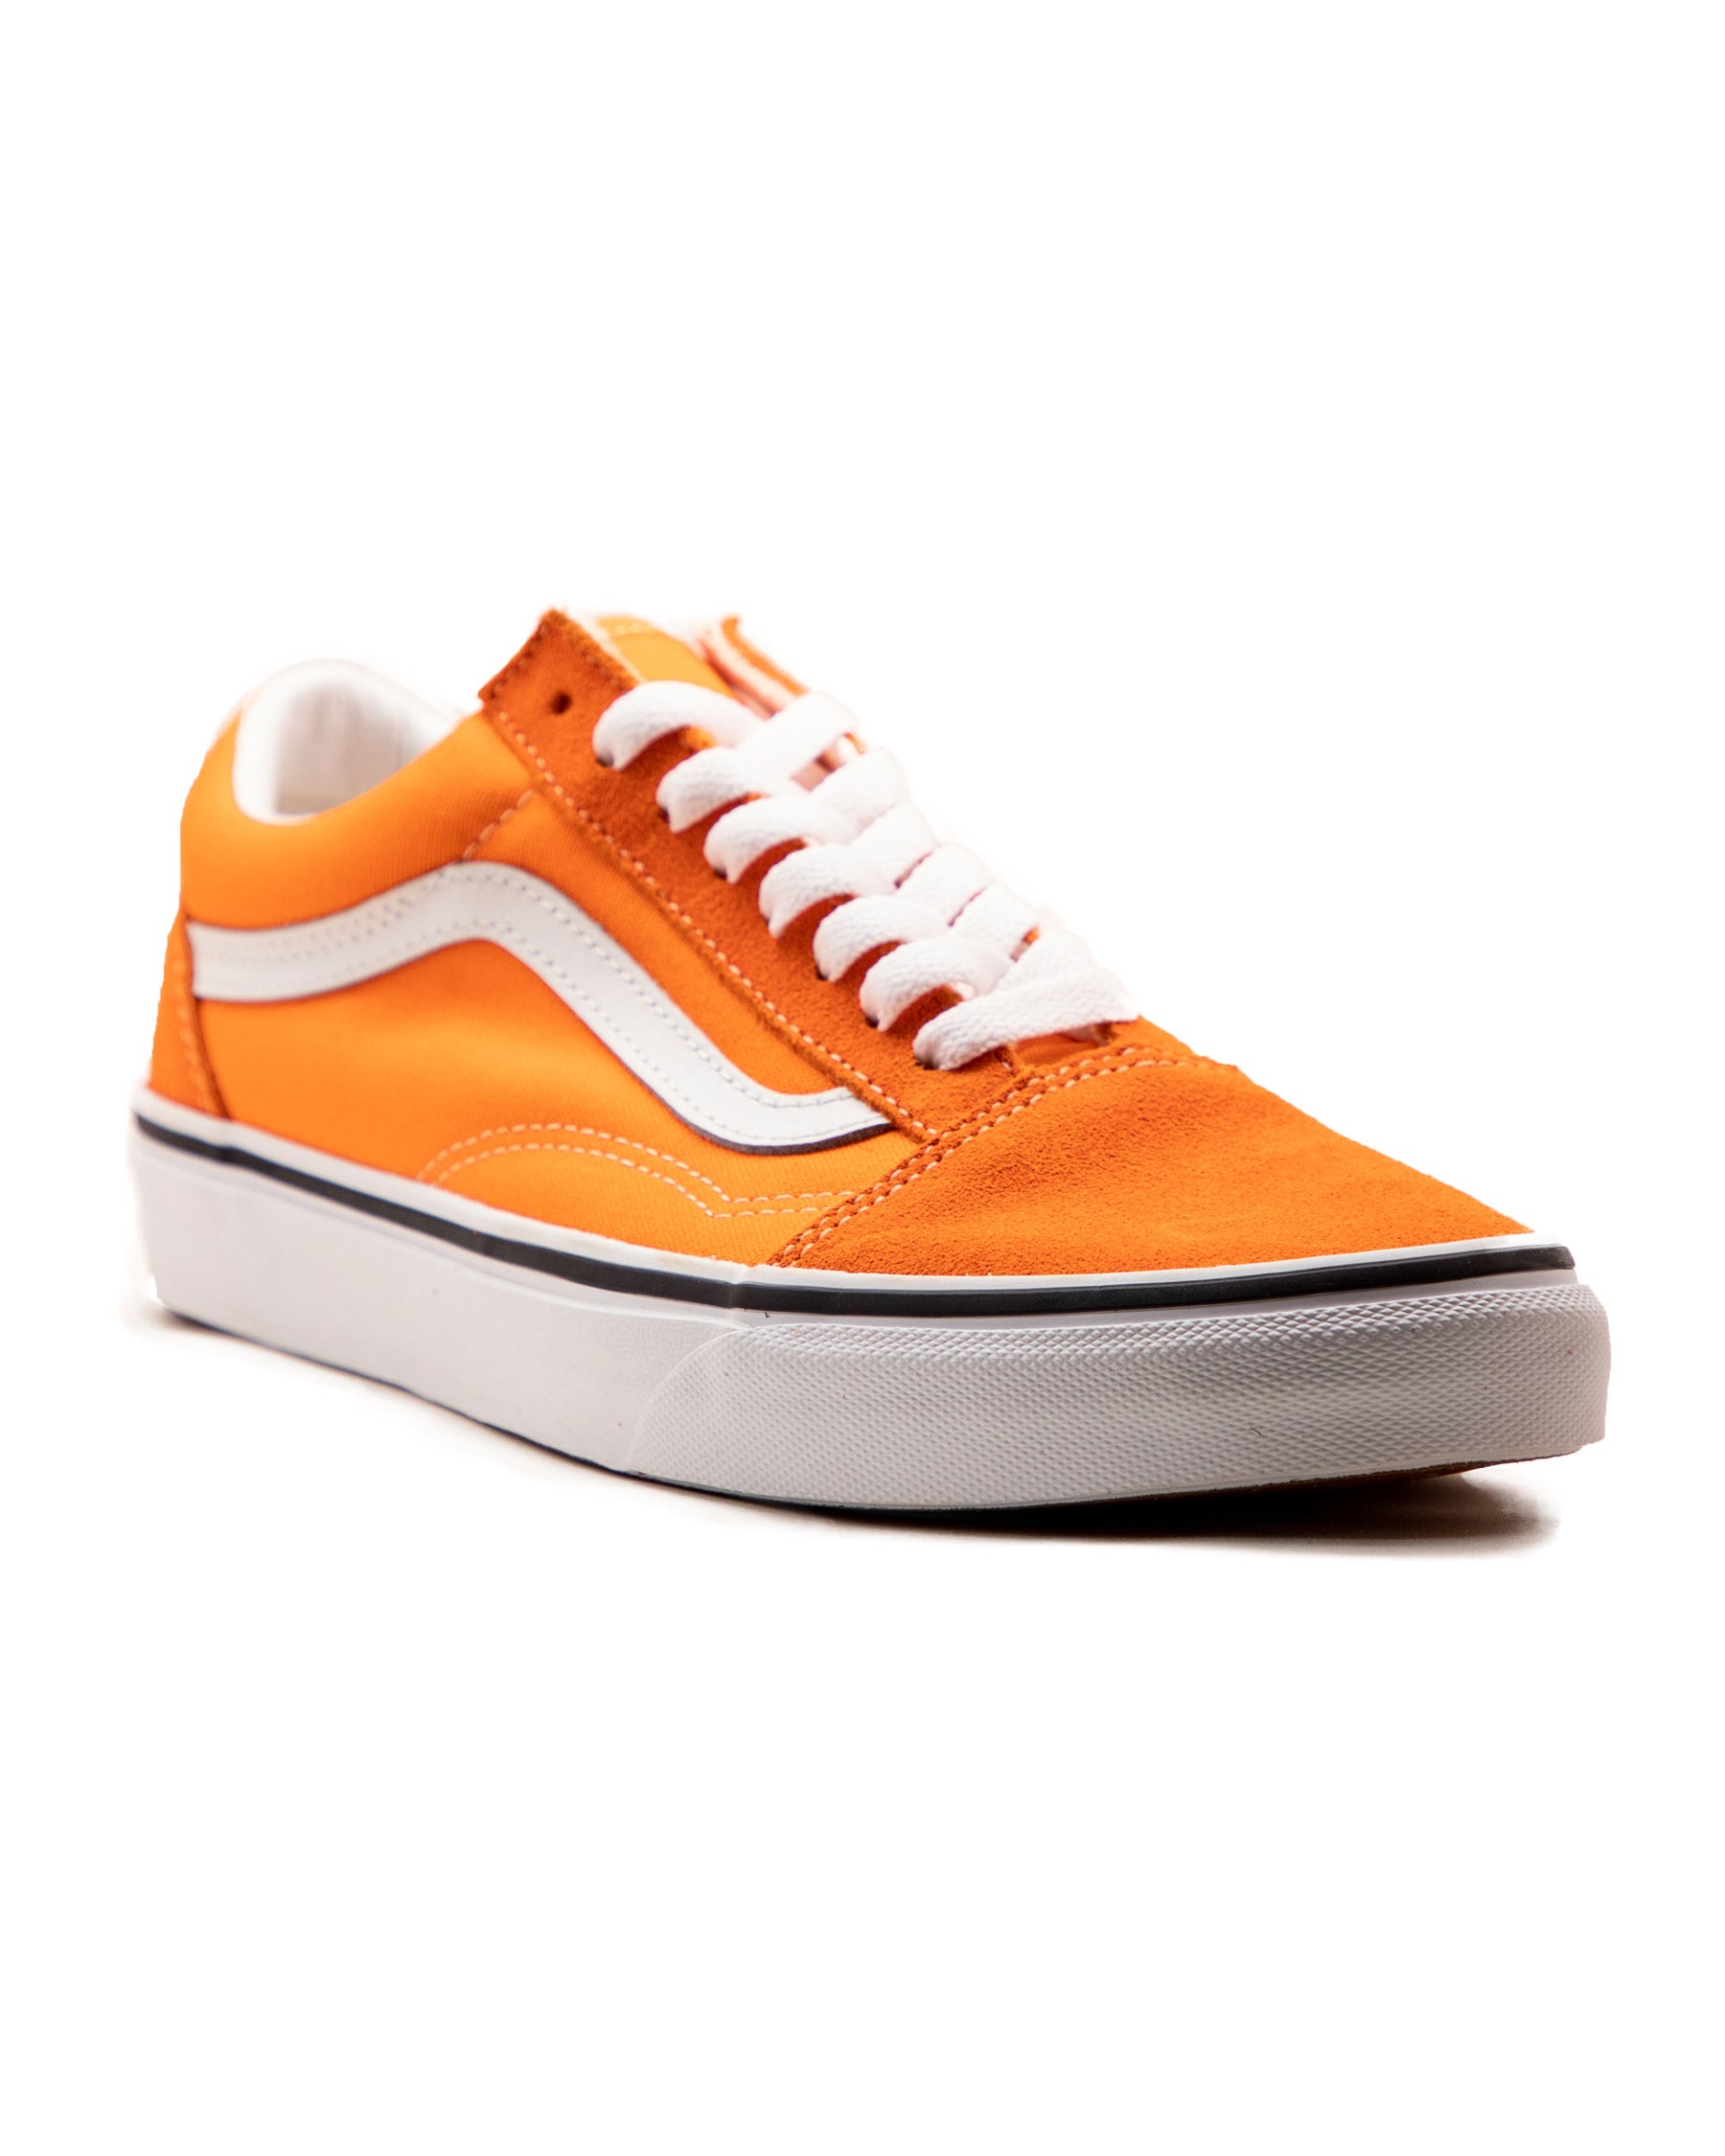 Sneakers Vans Old Skool Orange